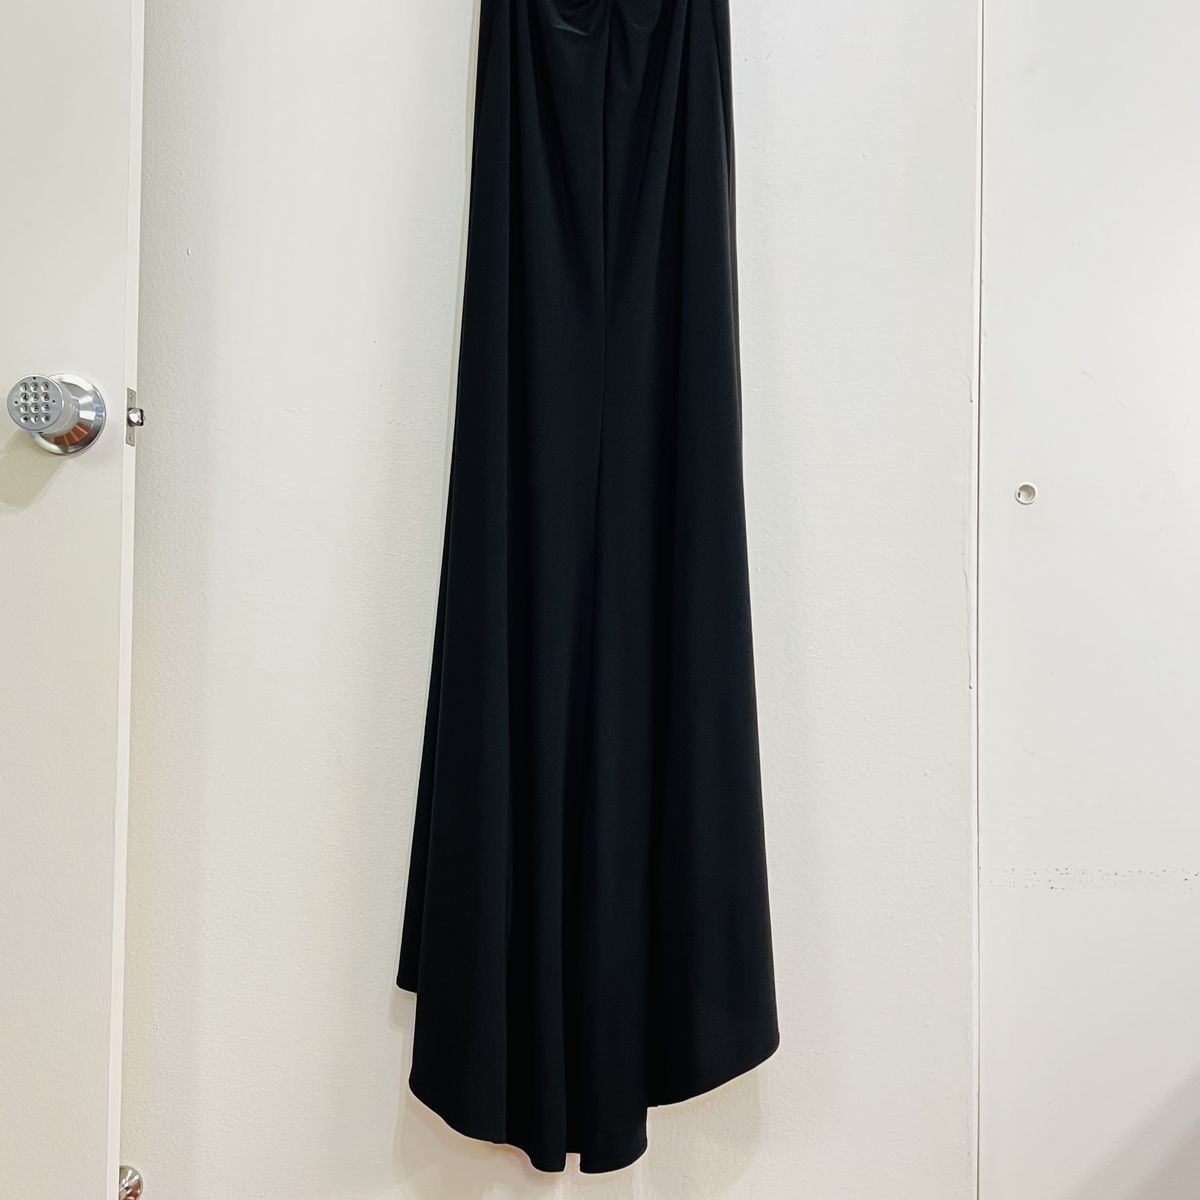 Style 25648 La Femme Size 6 Plunge Black Side Slit Dress on Queenly